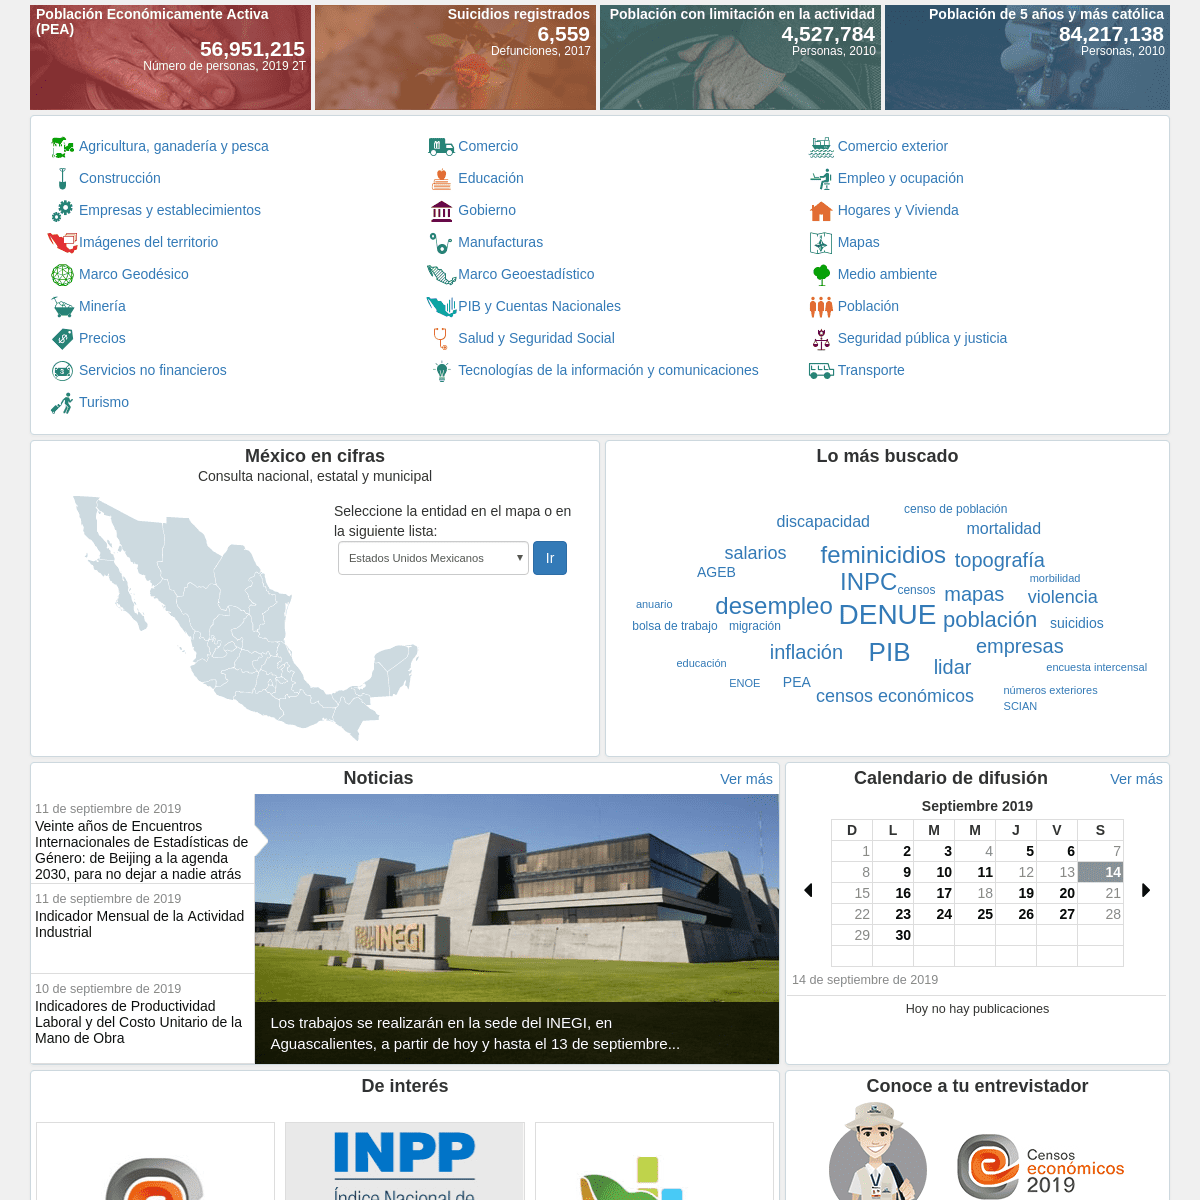 Instituto Nacional de Estadística y Geografía (INEGI)